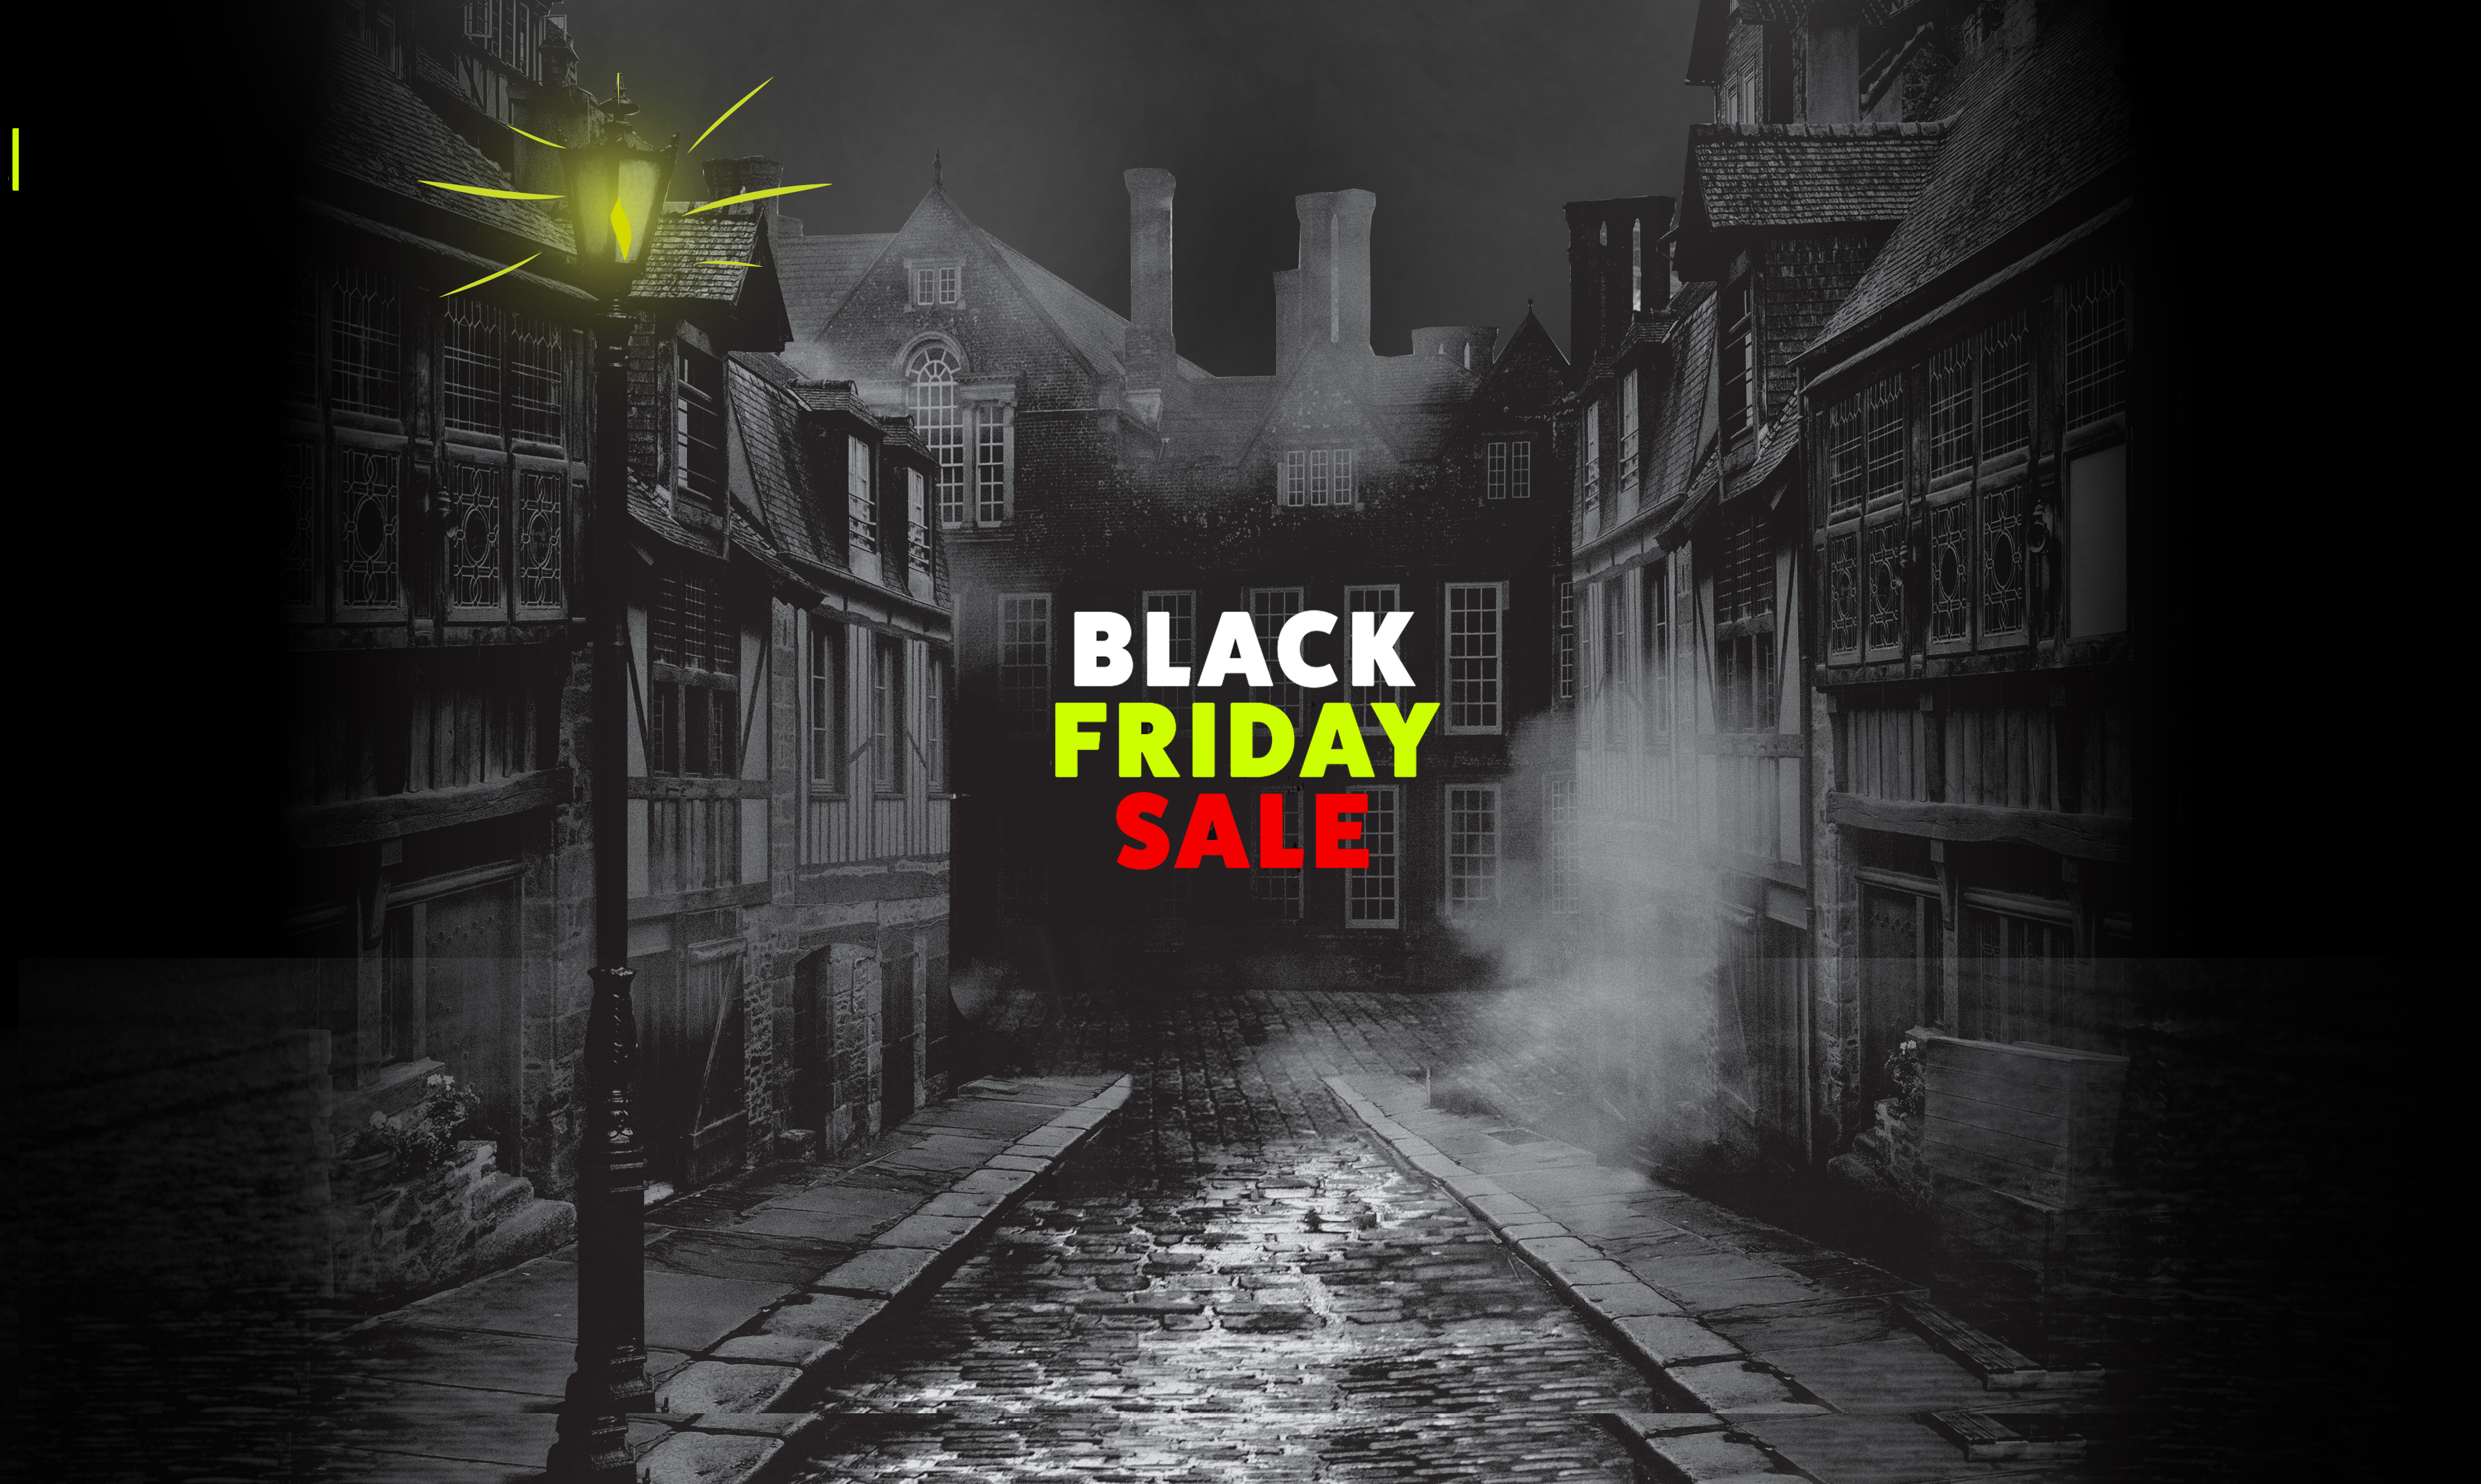 Edinburgh Dungeon Black Friday Sale 2020